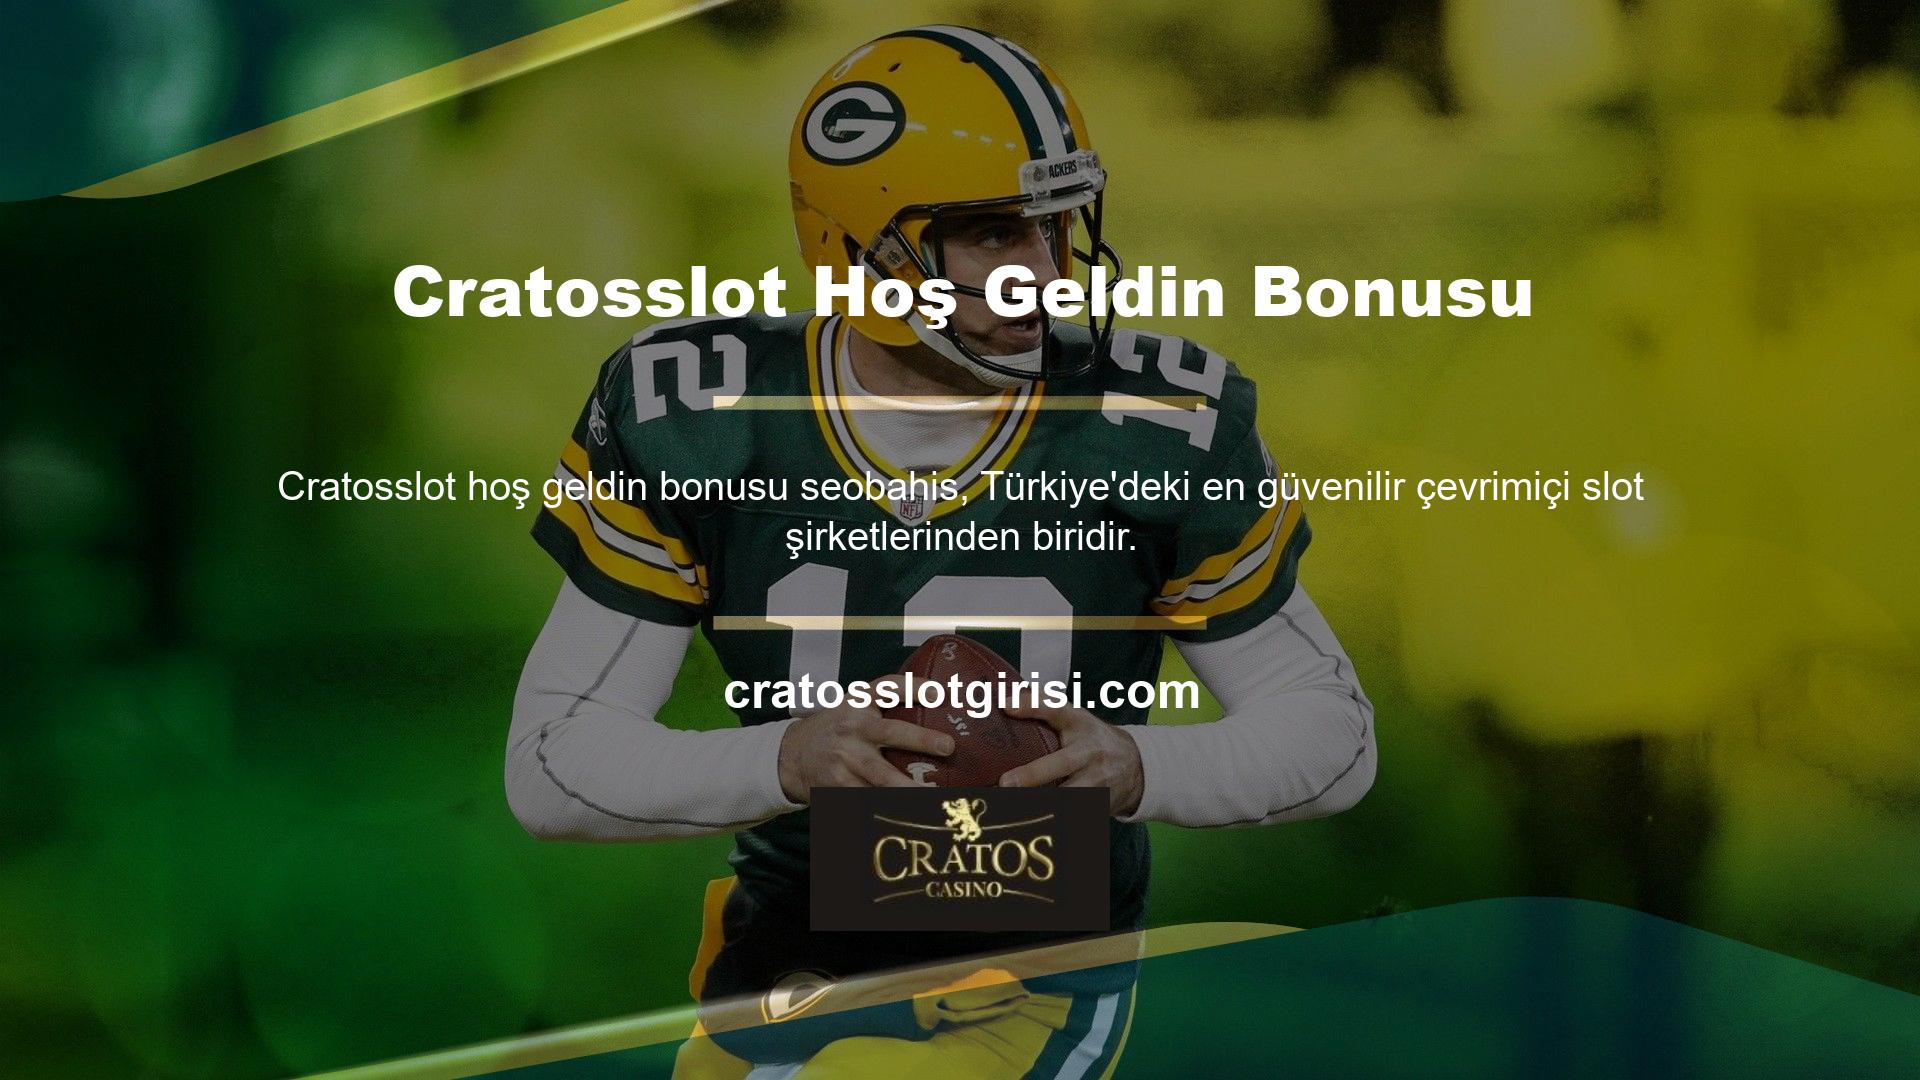 Cratosslot, çevrimiçi poker oyuncu kitaplarına güvenen ve takdir eden bahisçilerden biridir